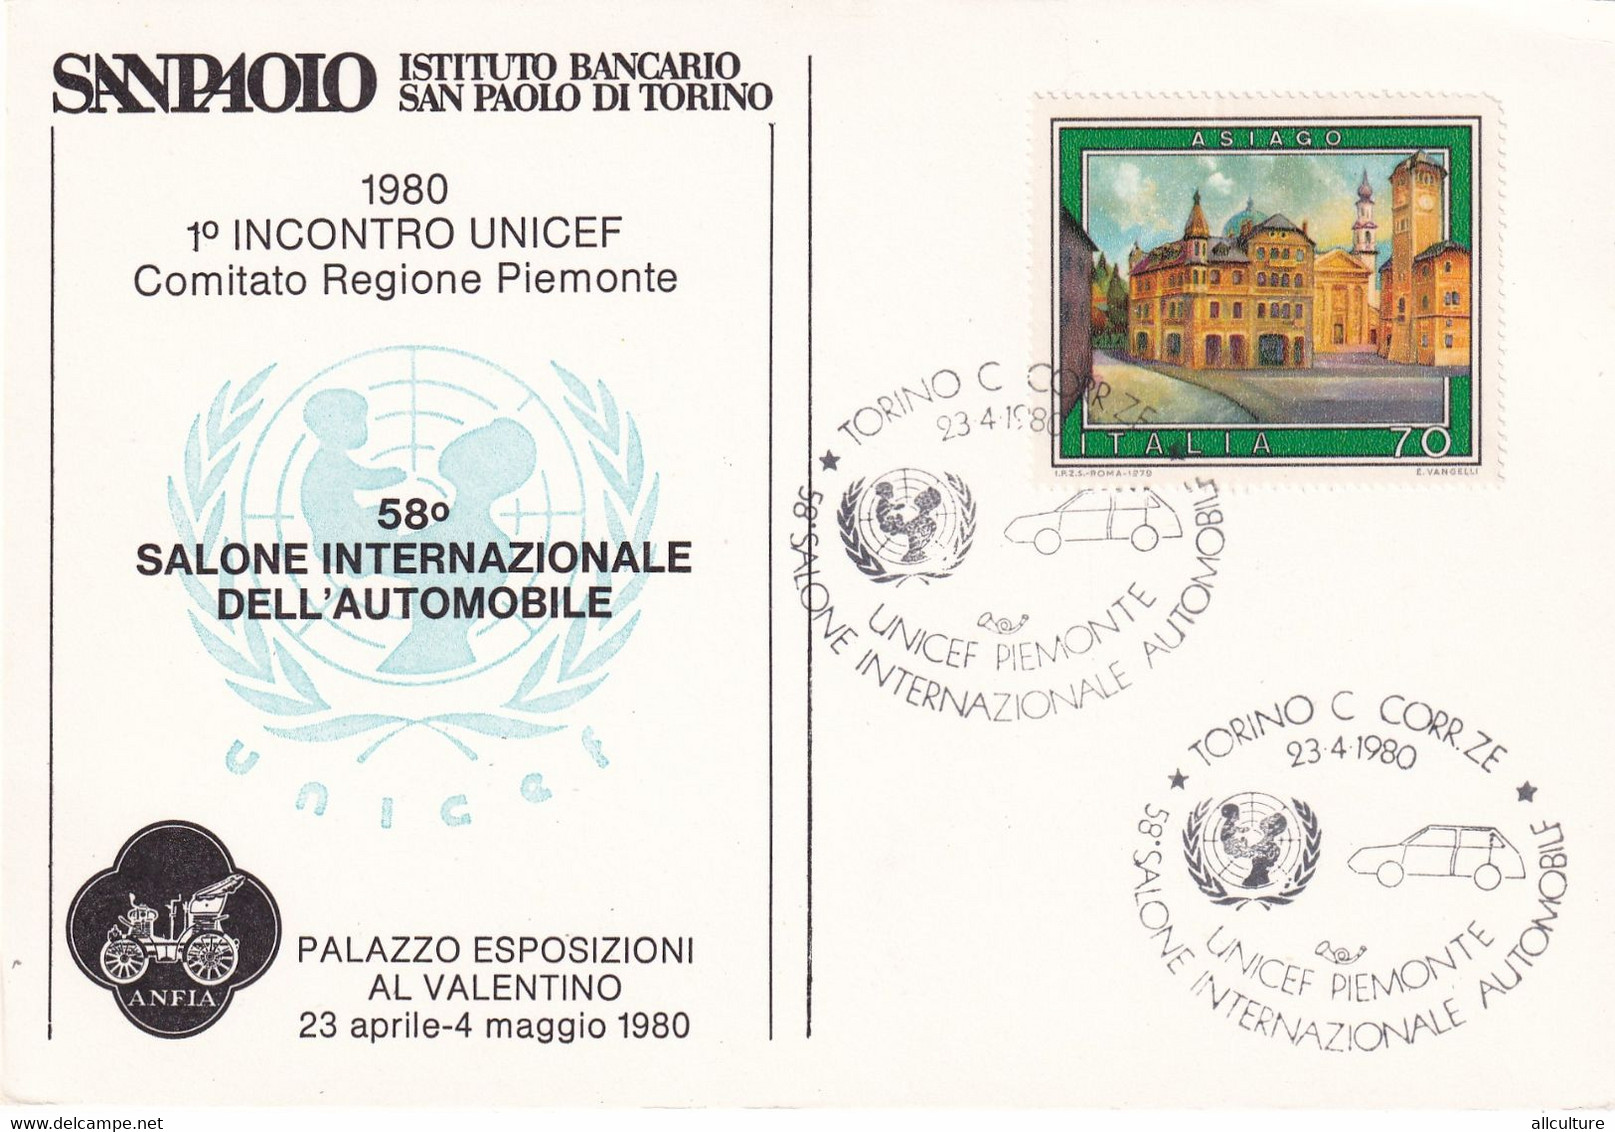 A10889- SALONE INTERNAZIONALE DELL'AUTOMOBILE SAN PAOLO, TORINO 1980, UNICEF PIEMONTE, ITALIA USED STAMP - UNICEF